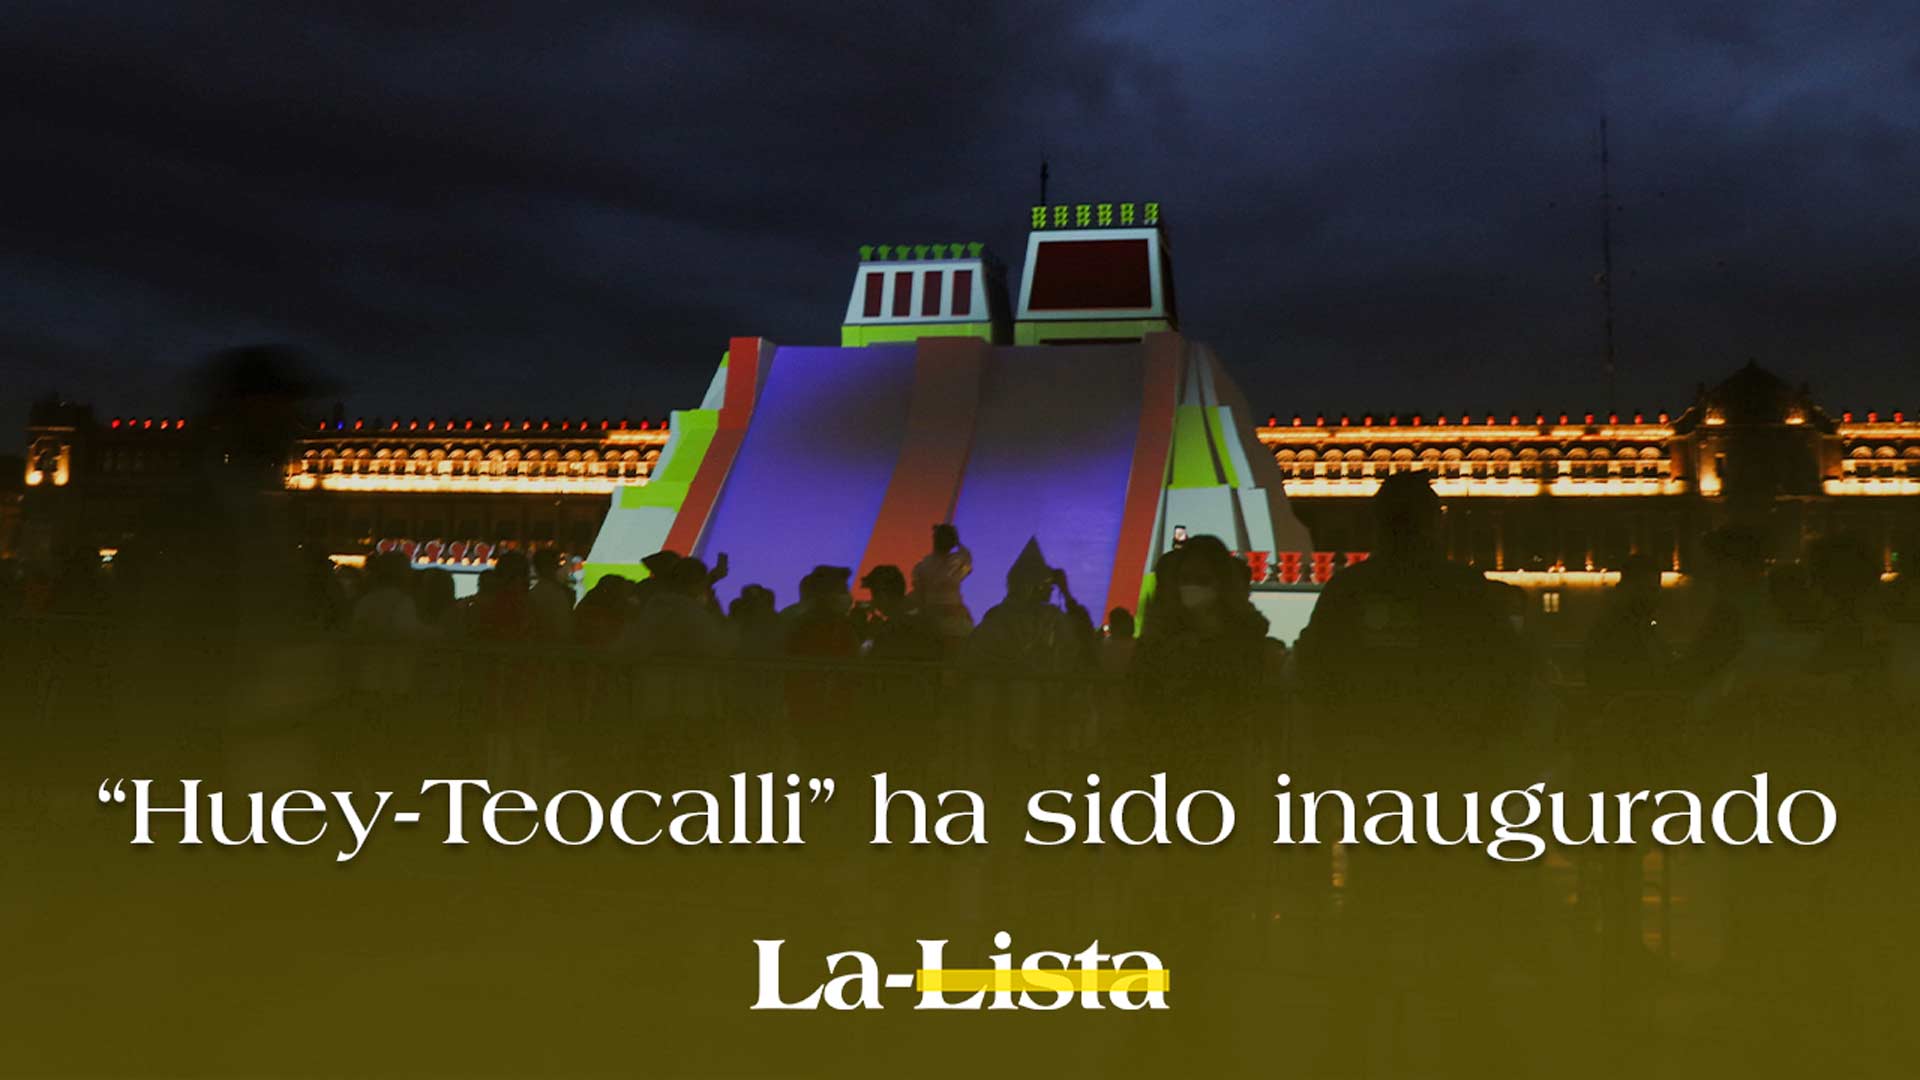 La maqueta del Templo Mayor de México Tenochtitlan, ‘Huey-Teocalli’ ha sido inaugurada